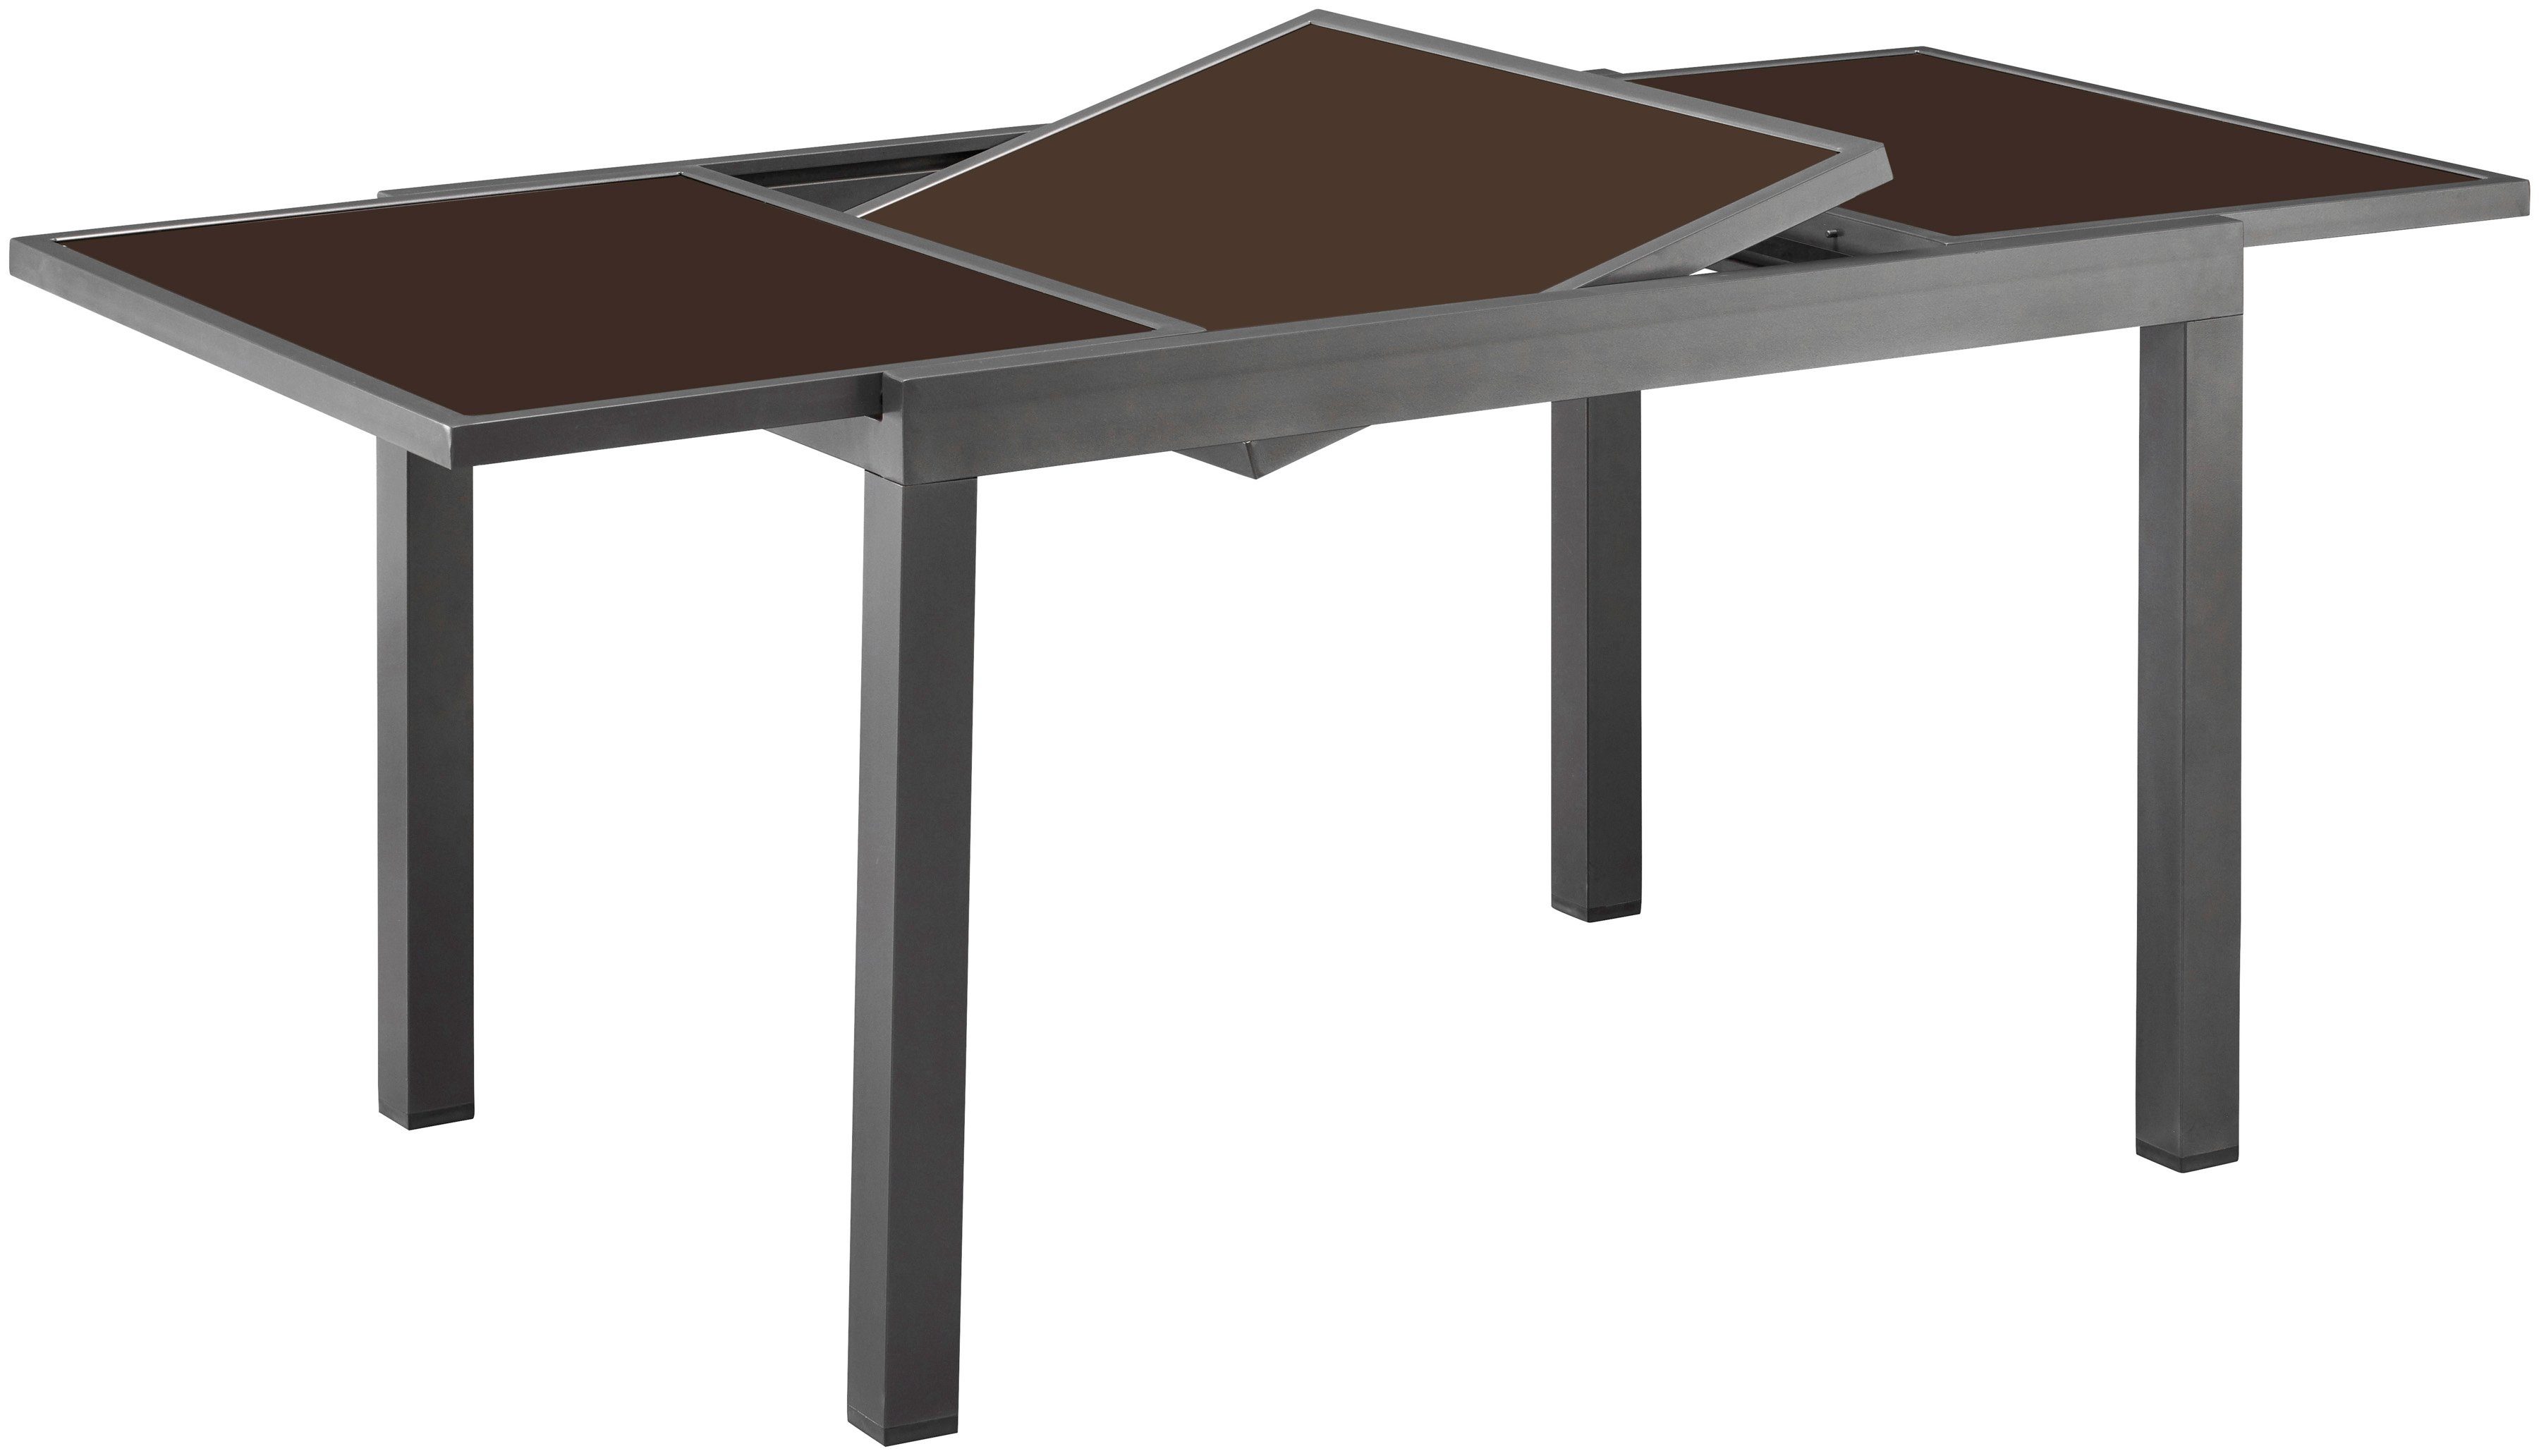 180-240cm auf ausziehbar MERXX anthrazit Variante je Amalfi, Gartentisch nach